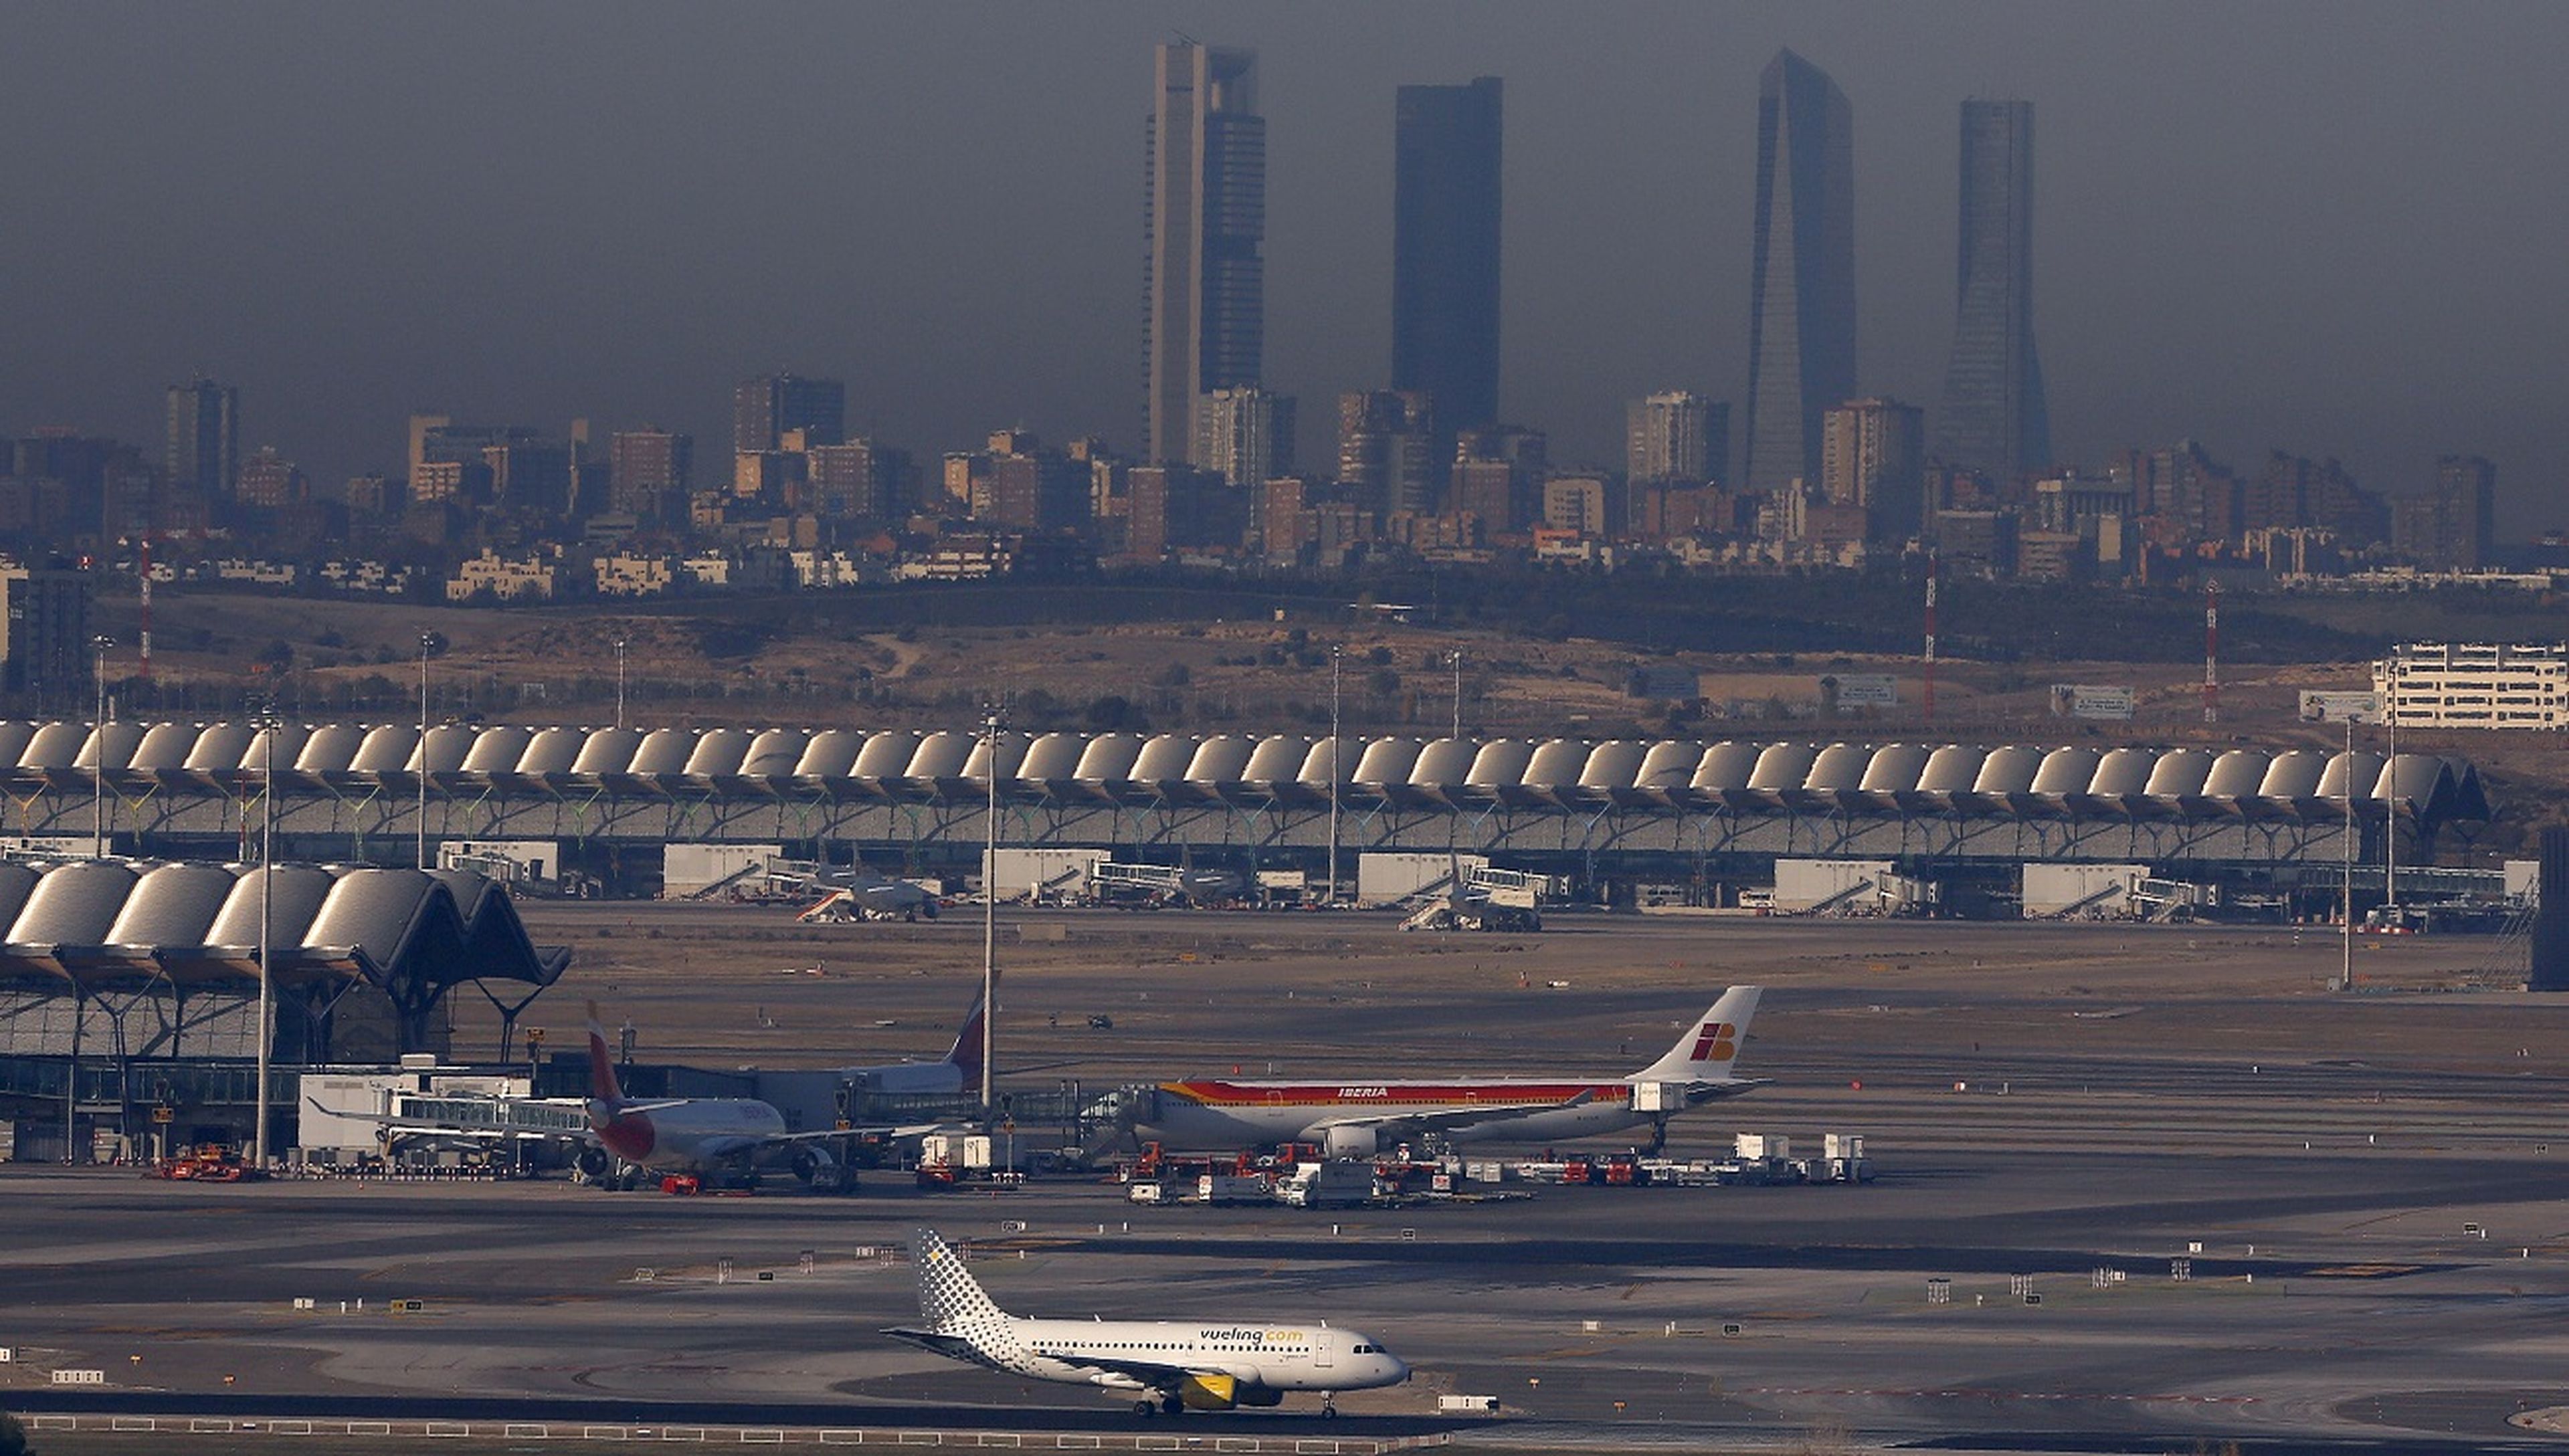 Vistas de una pista de despegue en el aeropuerto de Adolfo Suárez-Madrid-Barajas.